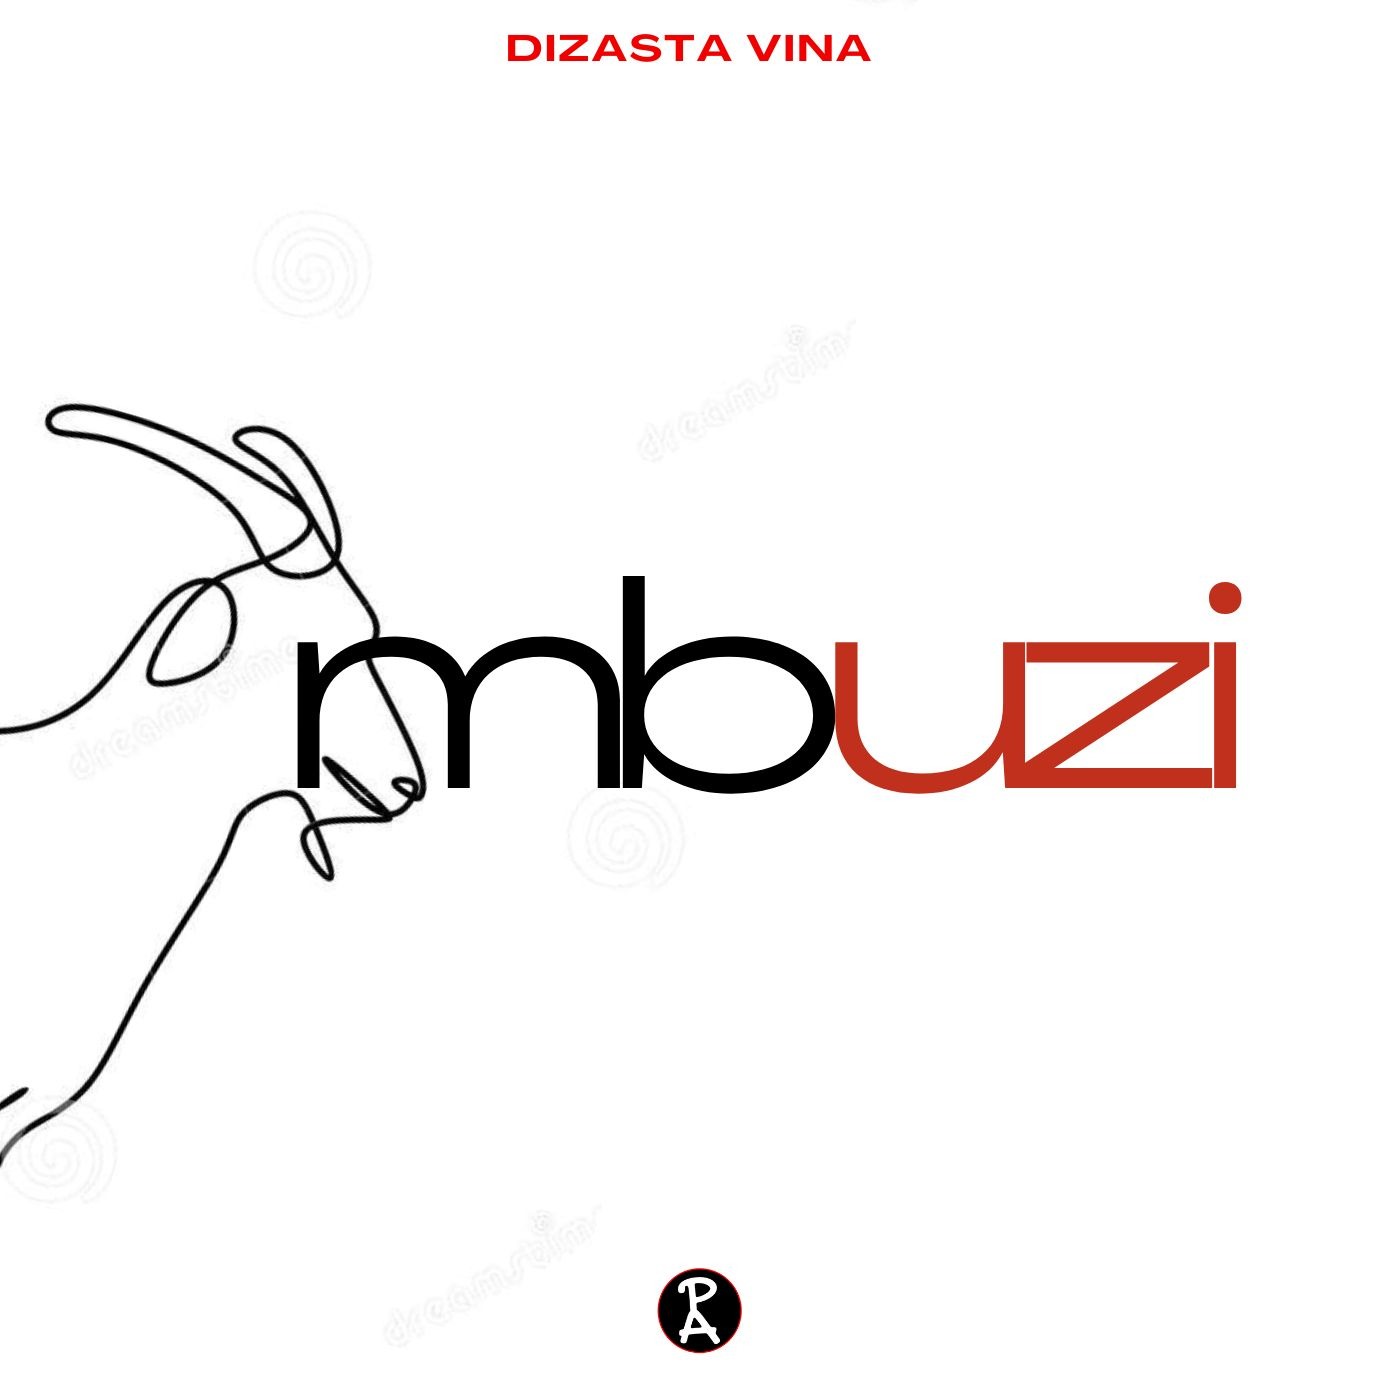  Dizasta Vina – Mbuzi